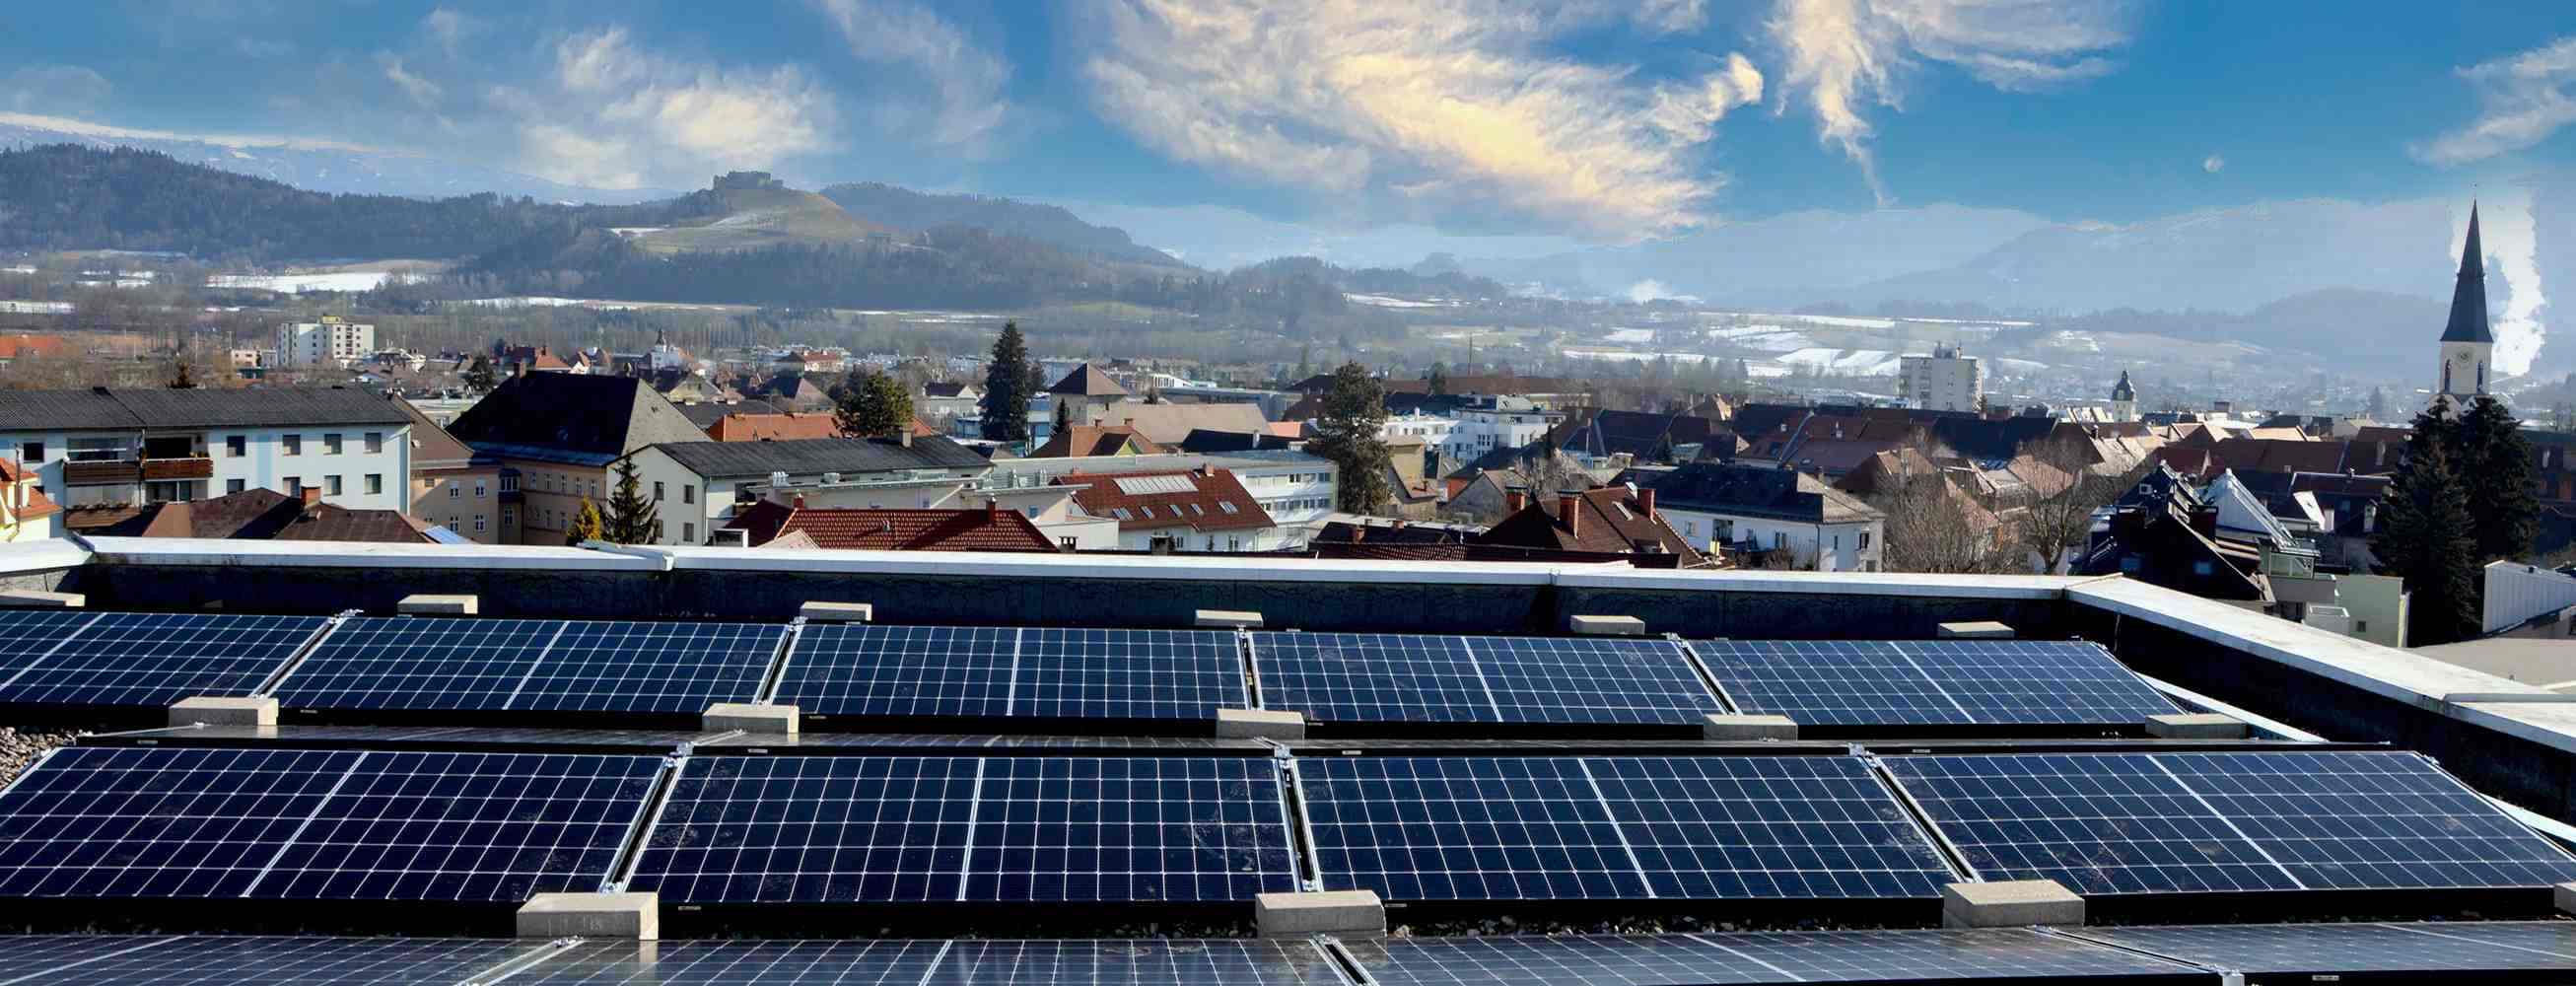 Das Bild zeigt einen Teil der Photovoltaikanlage auf dem Dach des Krankenhauses in St. Veit/Glan.